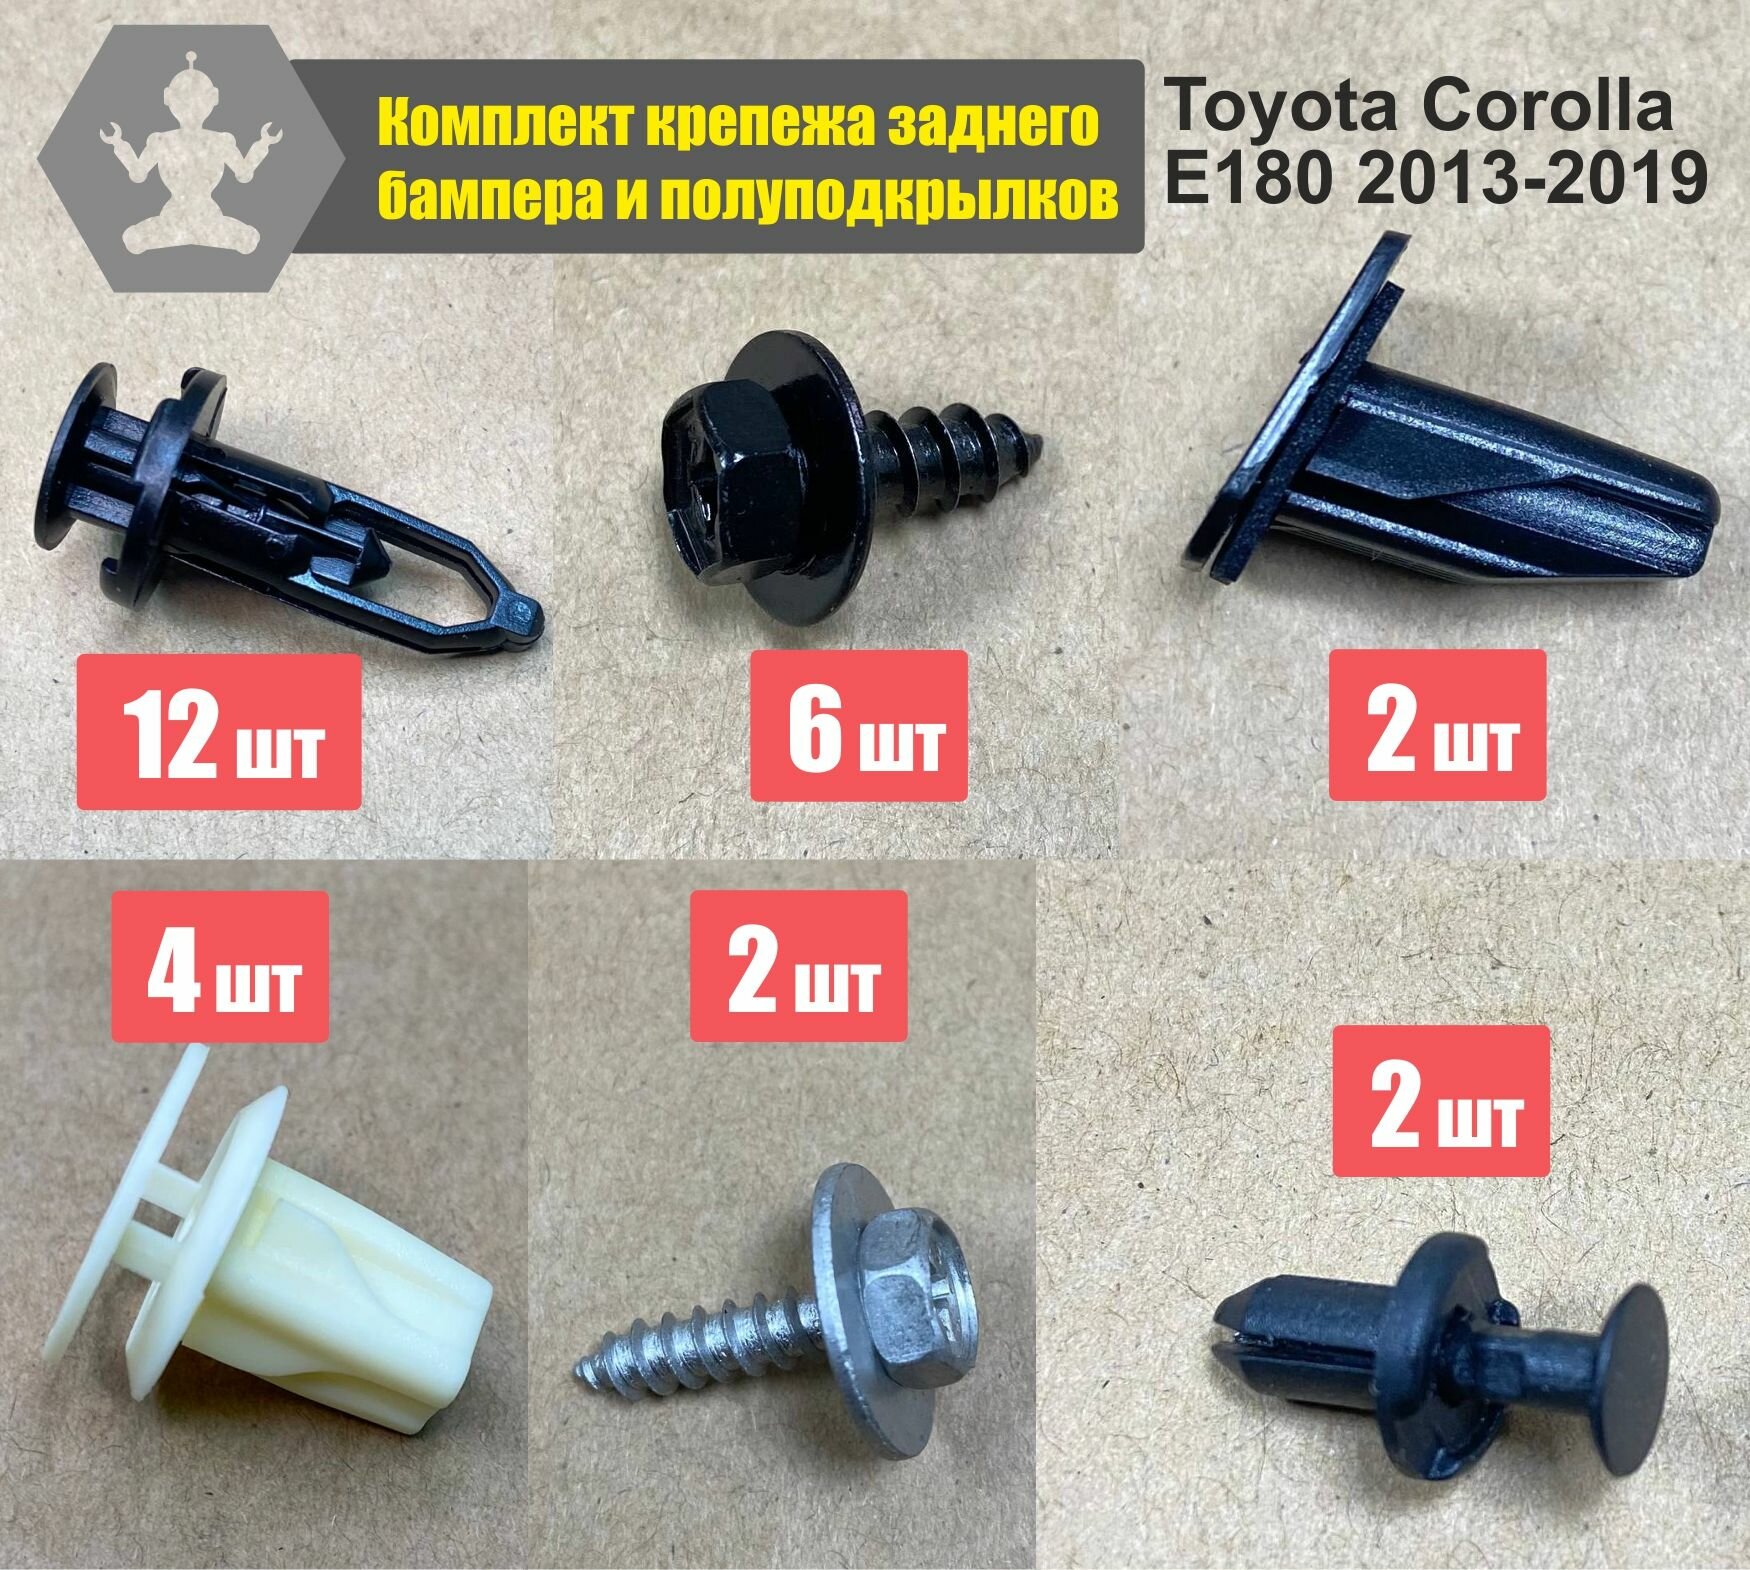 Комплект автокрепежа (клипс пистонов саморезов) для крепления заднего бампера и полуподкрылков Toyota Corolla E180 2013-2019